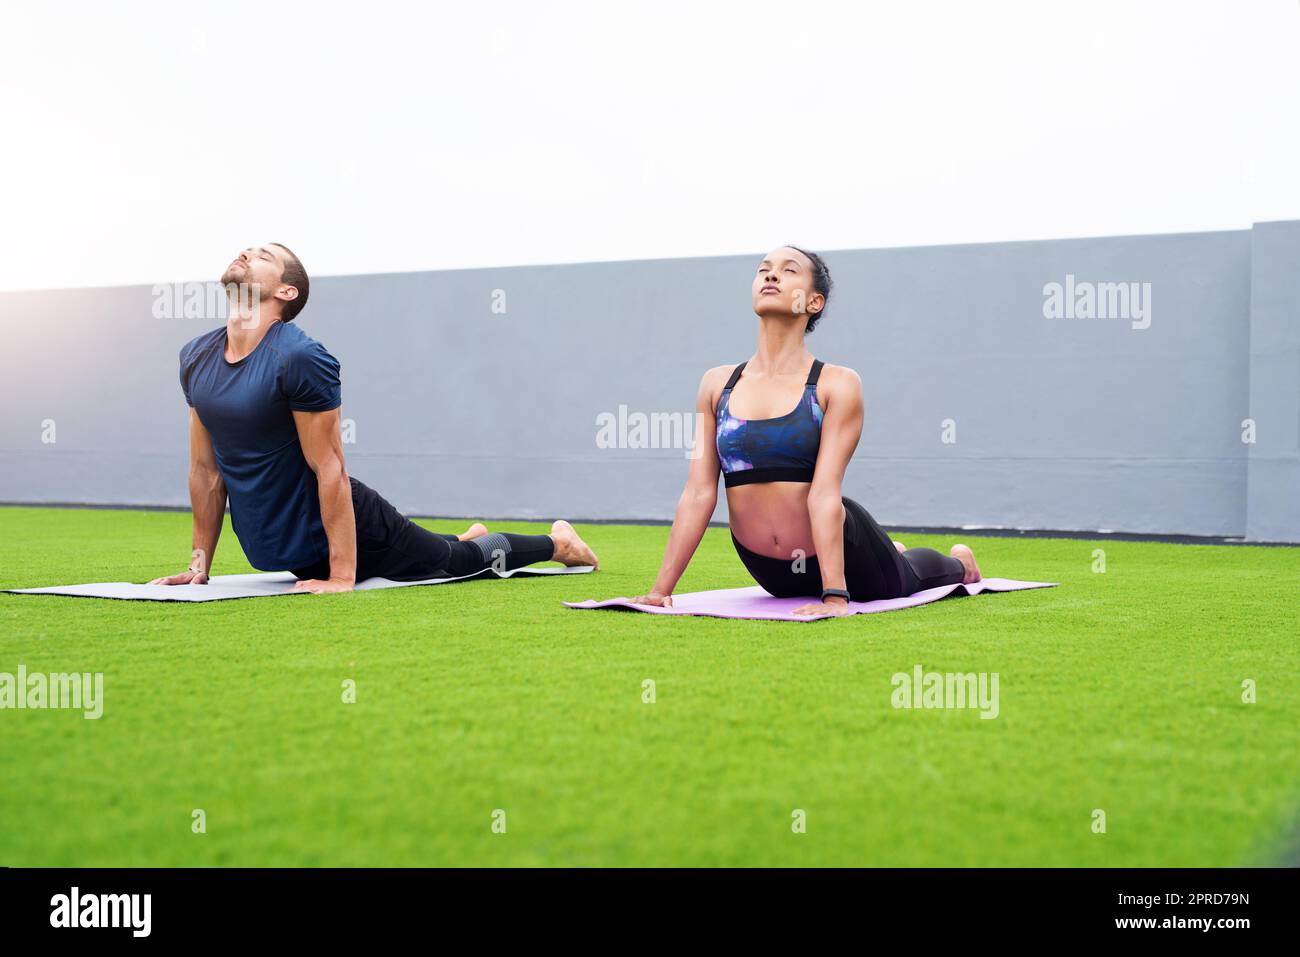 Ein junger Mann und eine junge Frau üben gemeinsam im Freien Yoga. Stockfoto